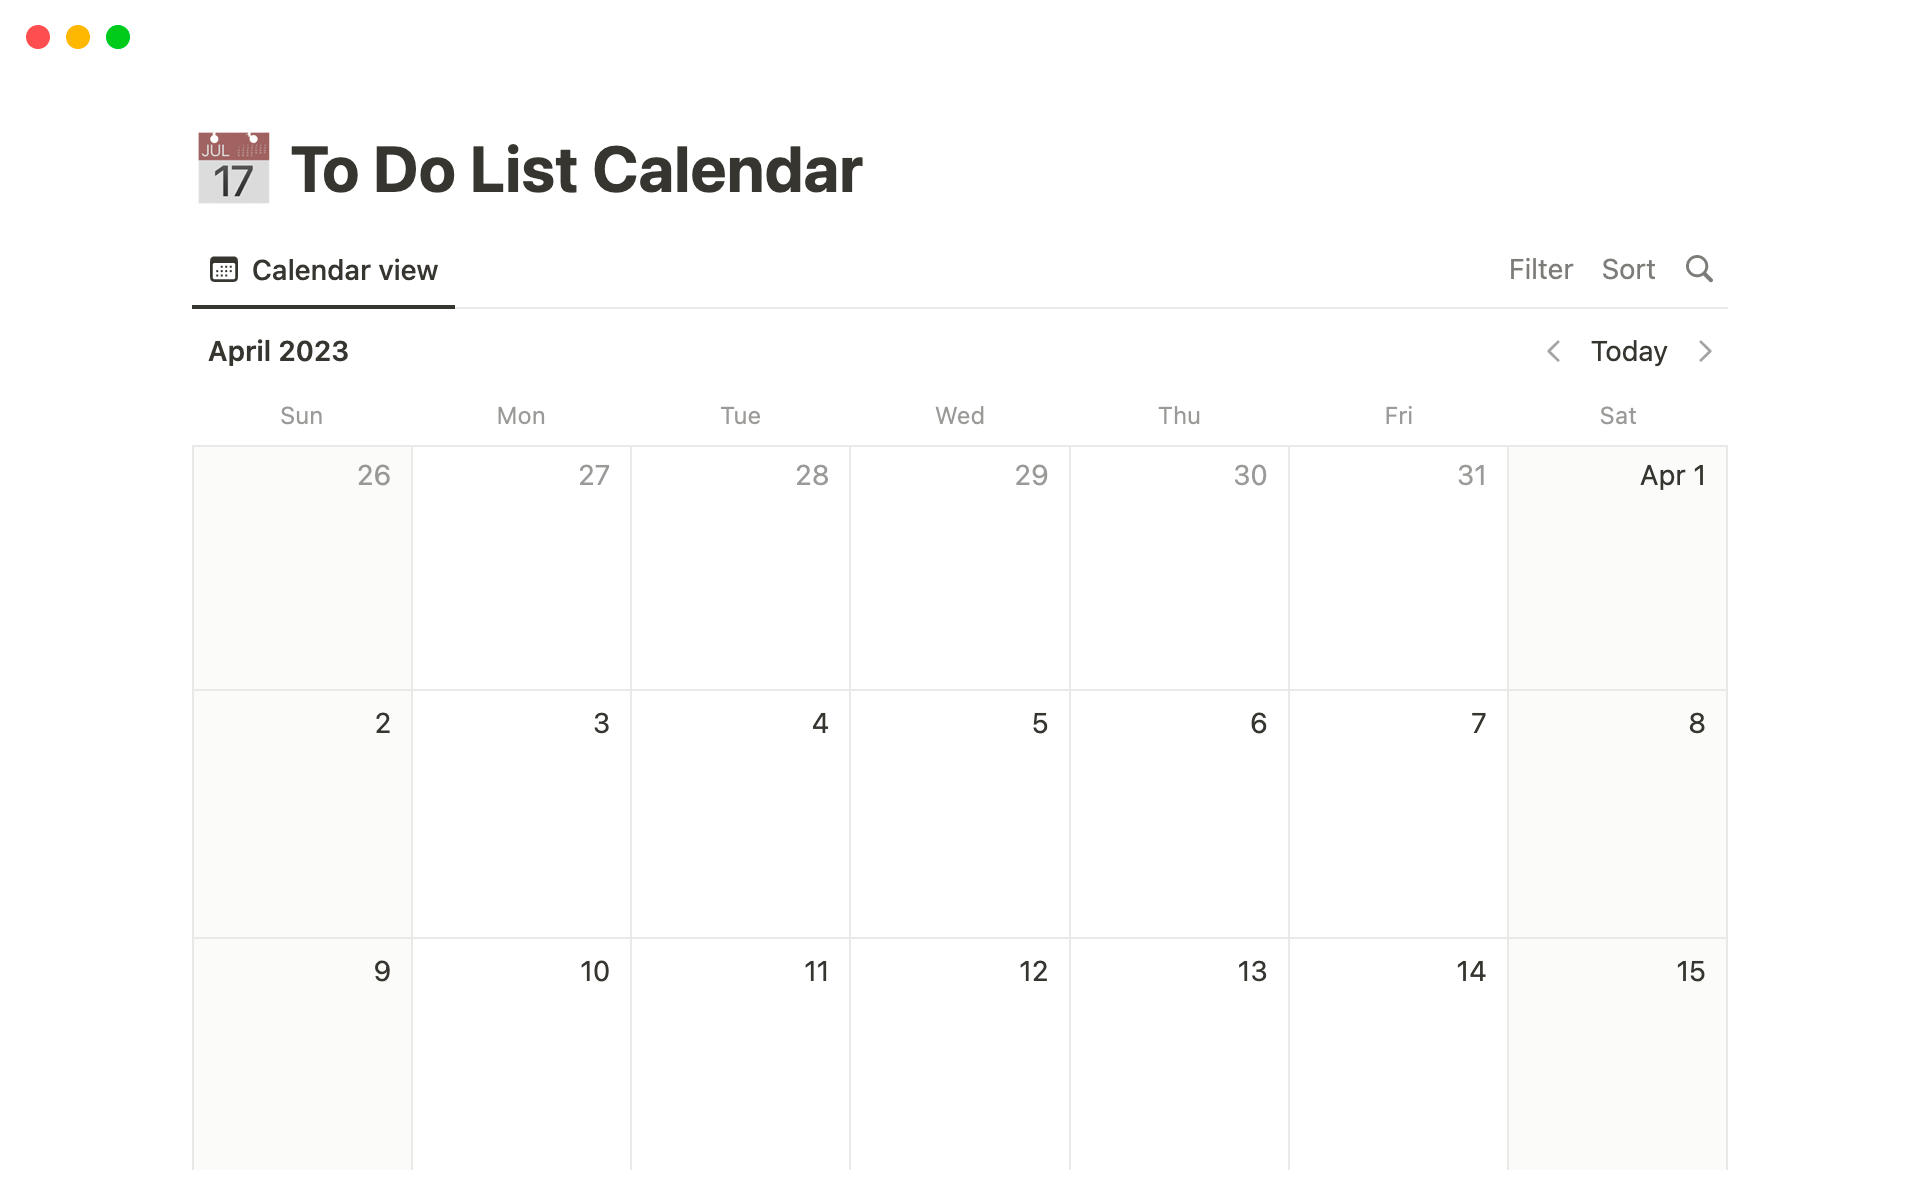 Helps people organize their tasks within an editable calendar.